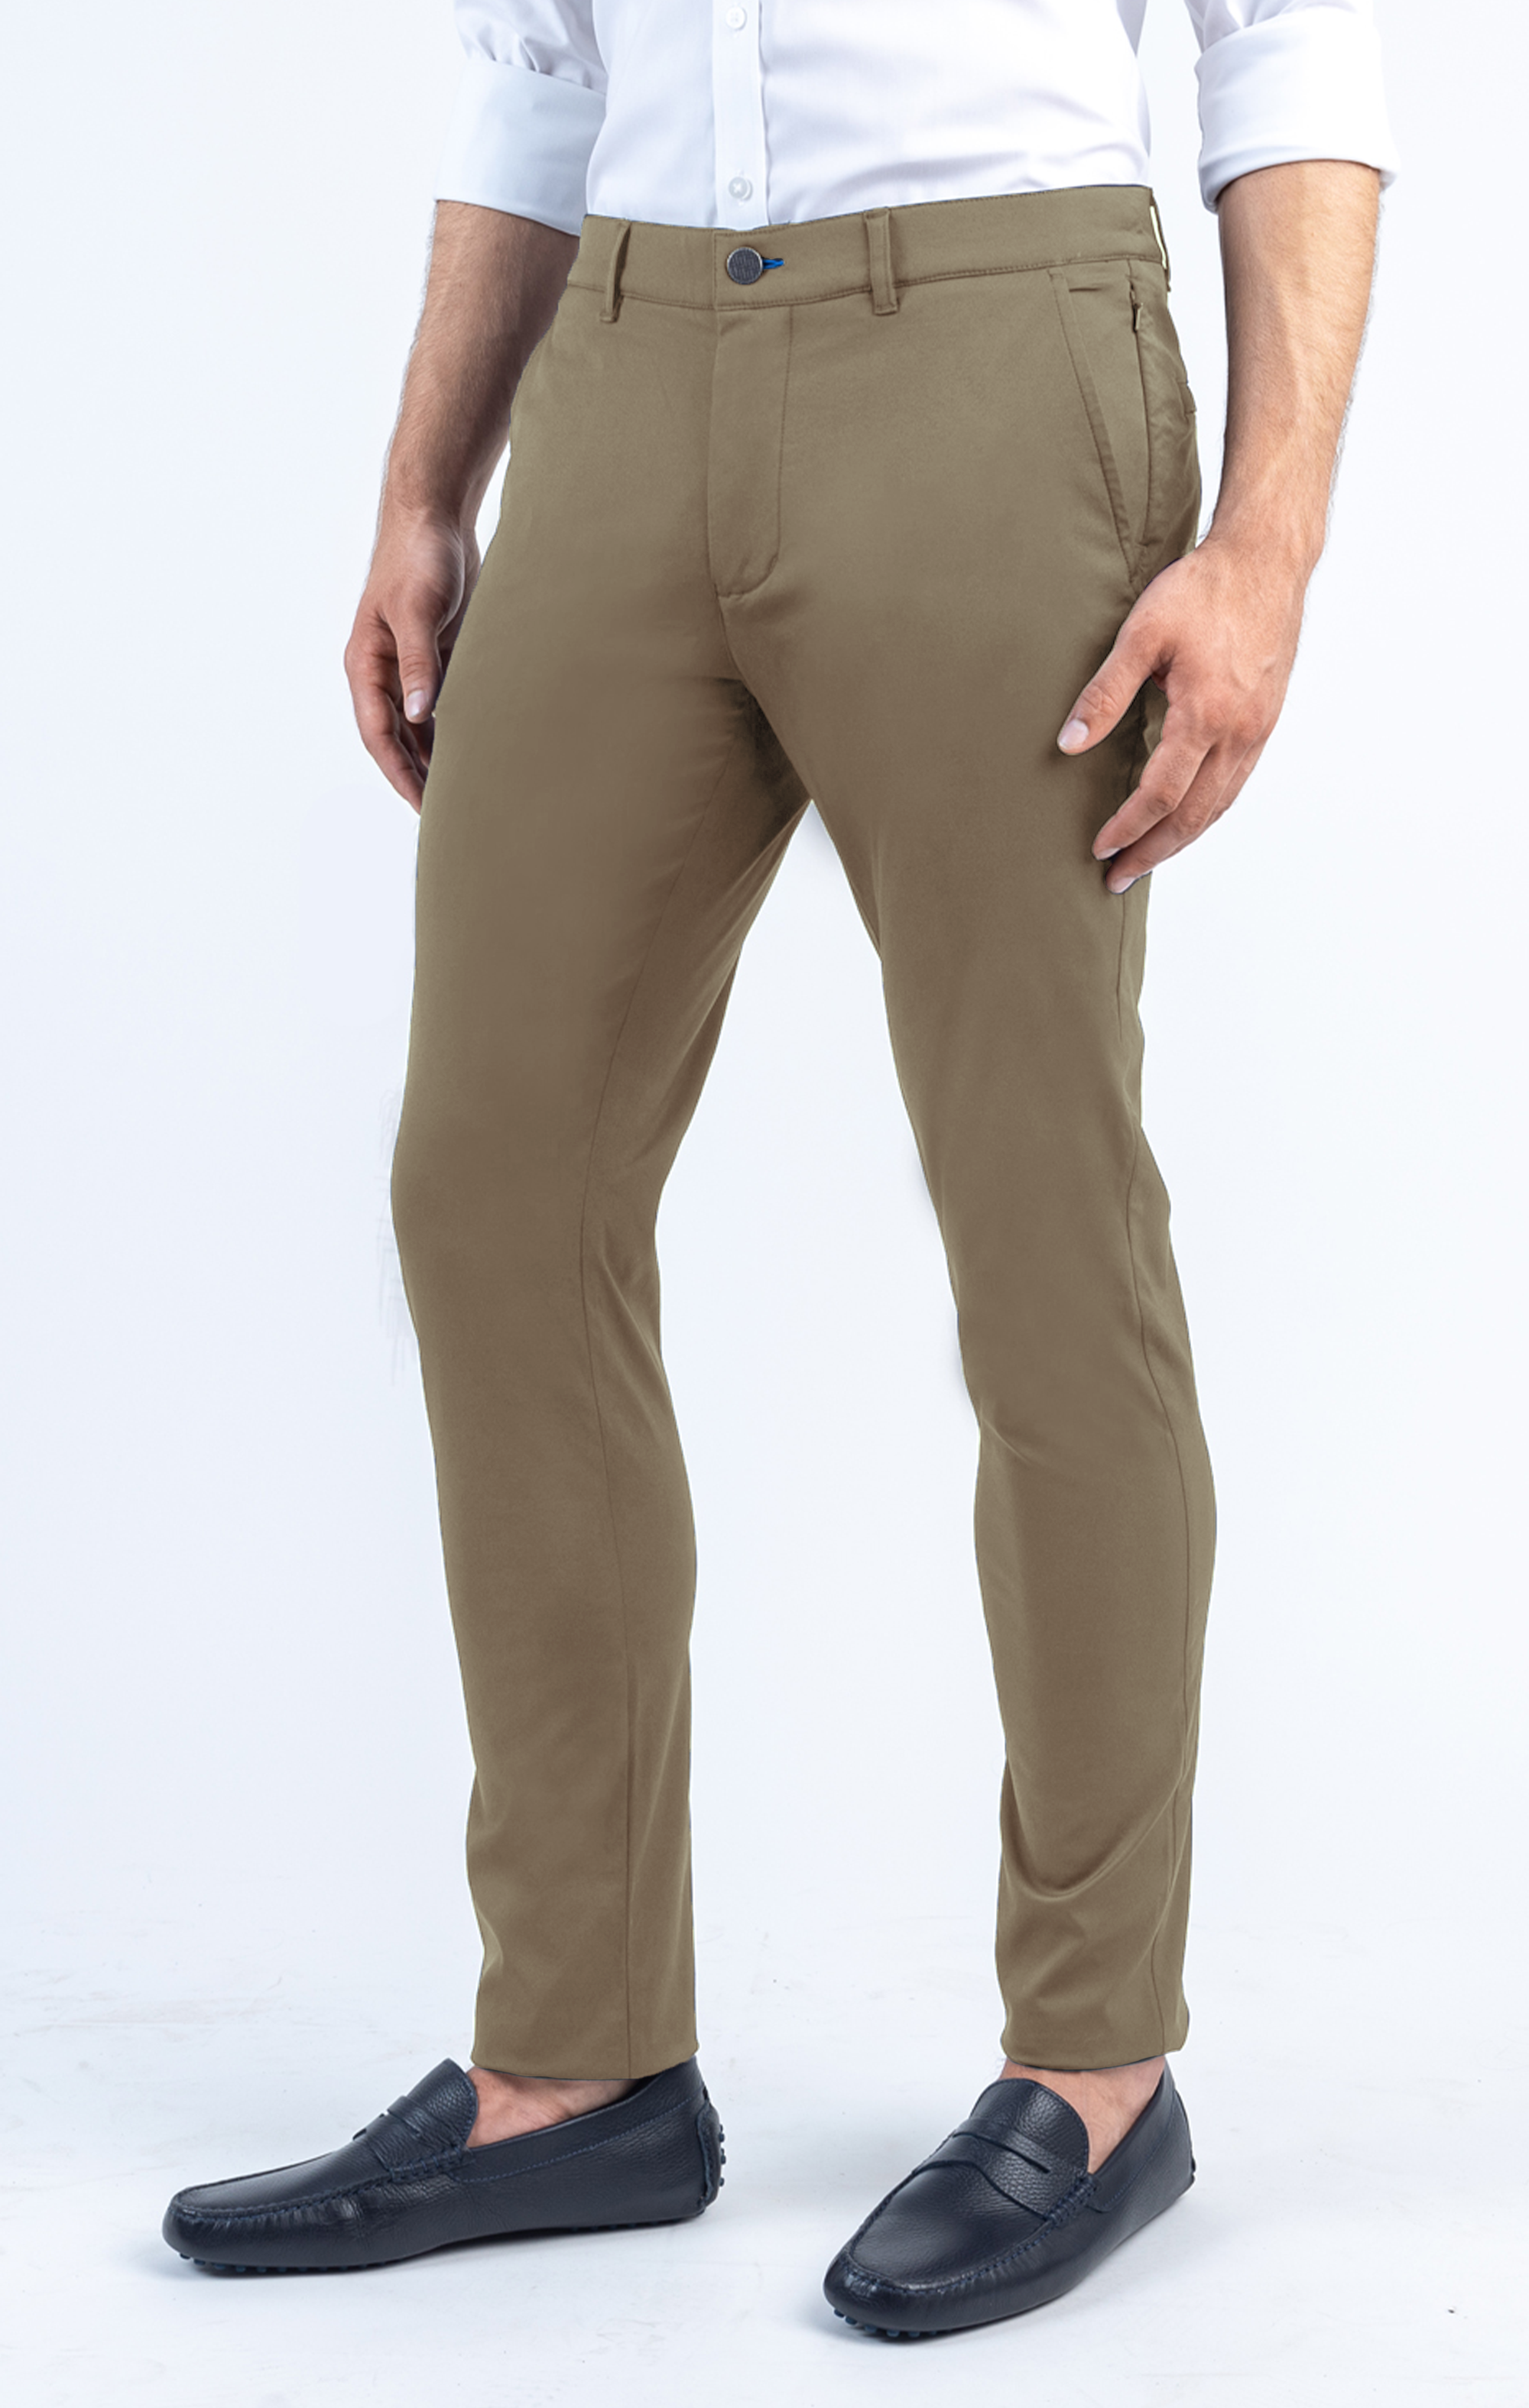 5 Beige Pants Outfits For Men | Model baju pria, Gaya pakaian pria, Pakaian  pria